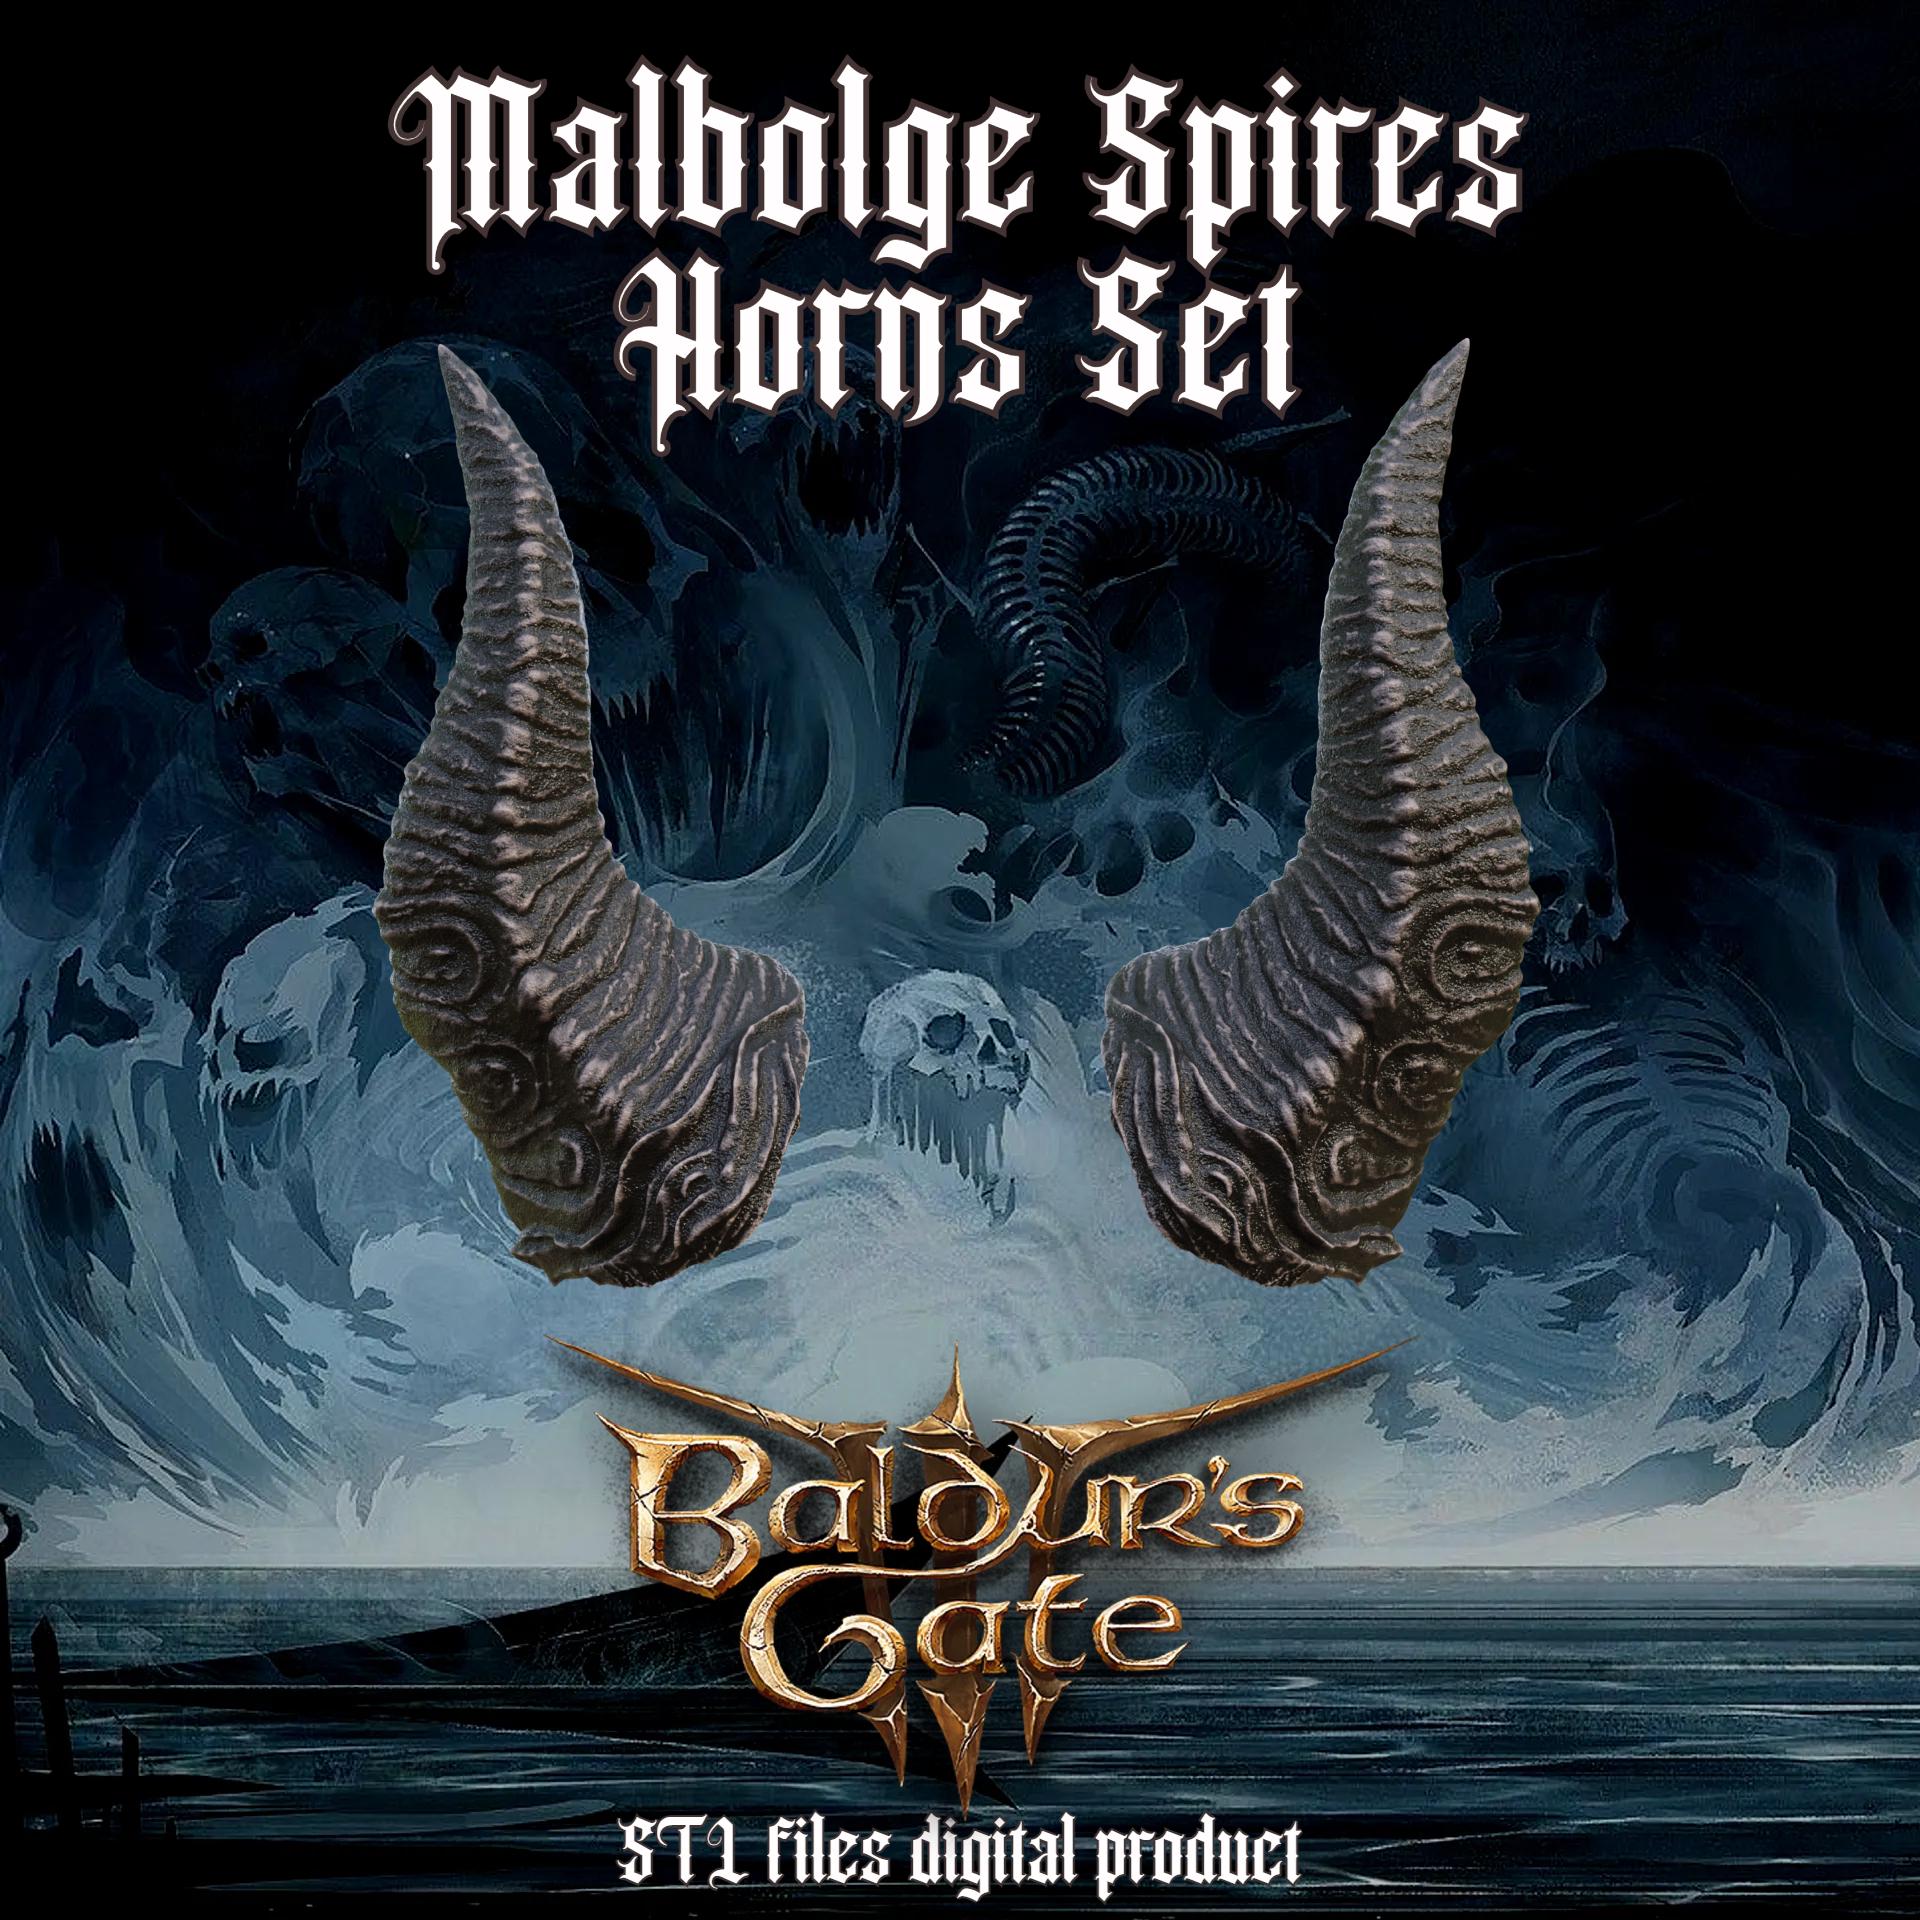 FANTASY MALBOLGE SPIRES HORNS SET BALDURS GATE 3 3d model